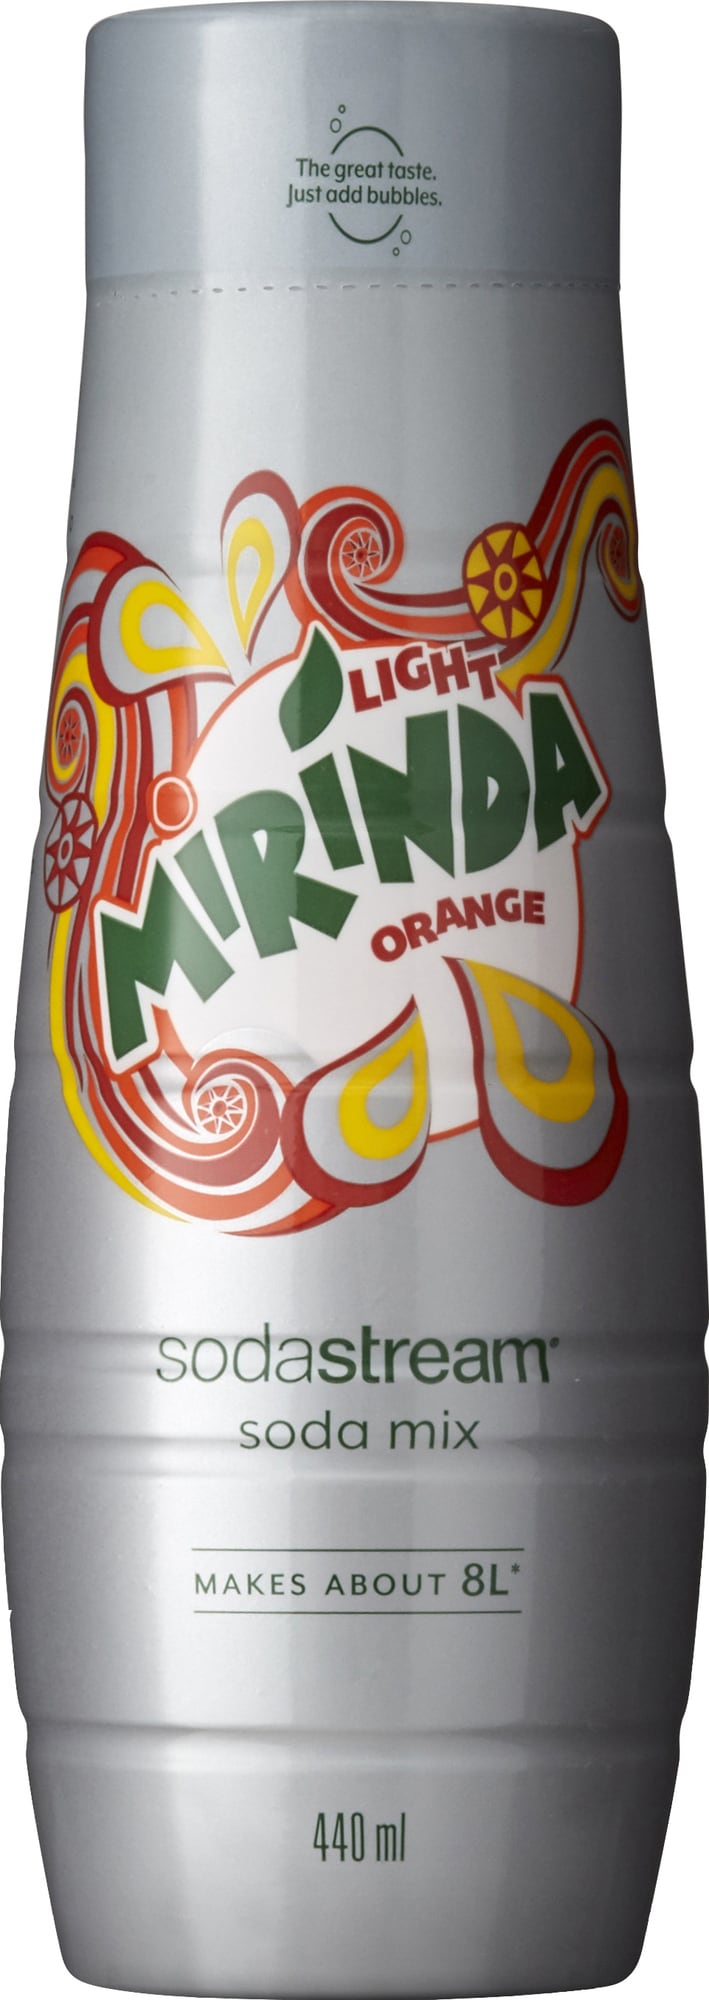 Sodastream Mirinda Orange Light smag 1100010770